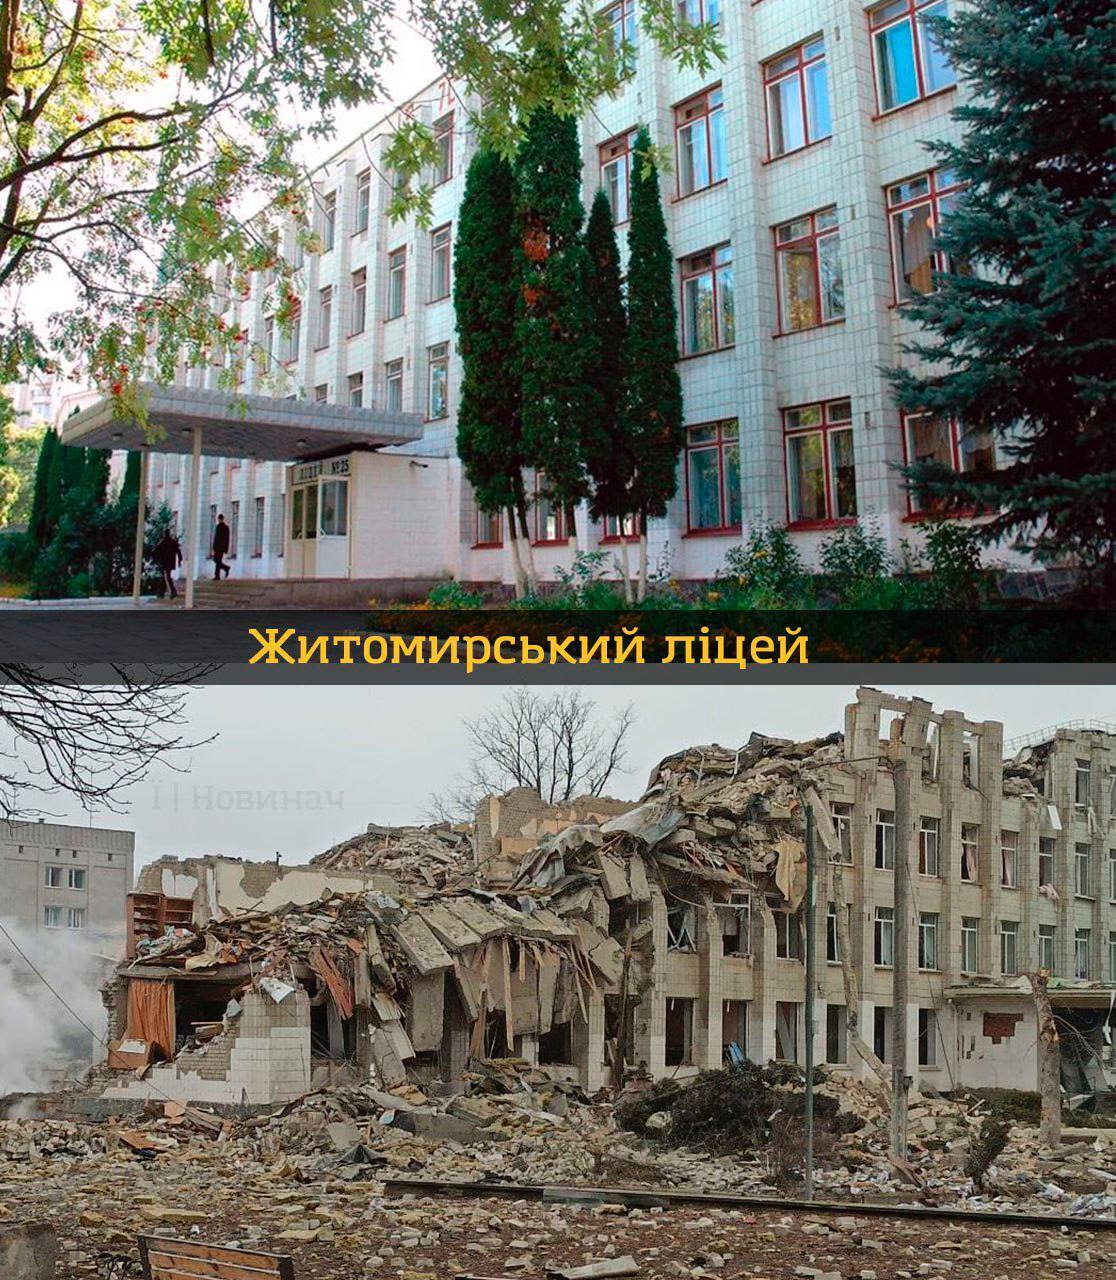 Украинские образовательные учреждения ''до'' и ''после'' полномасштабного вторжения рф